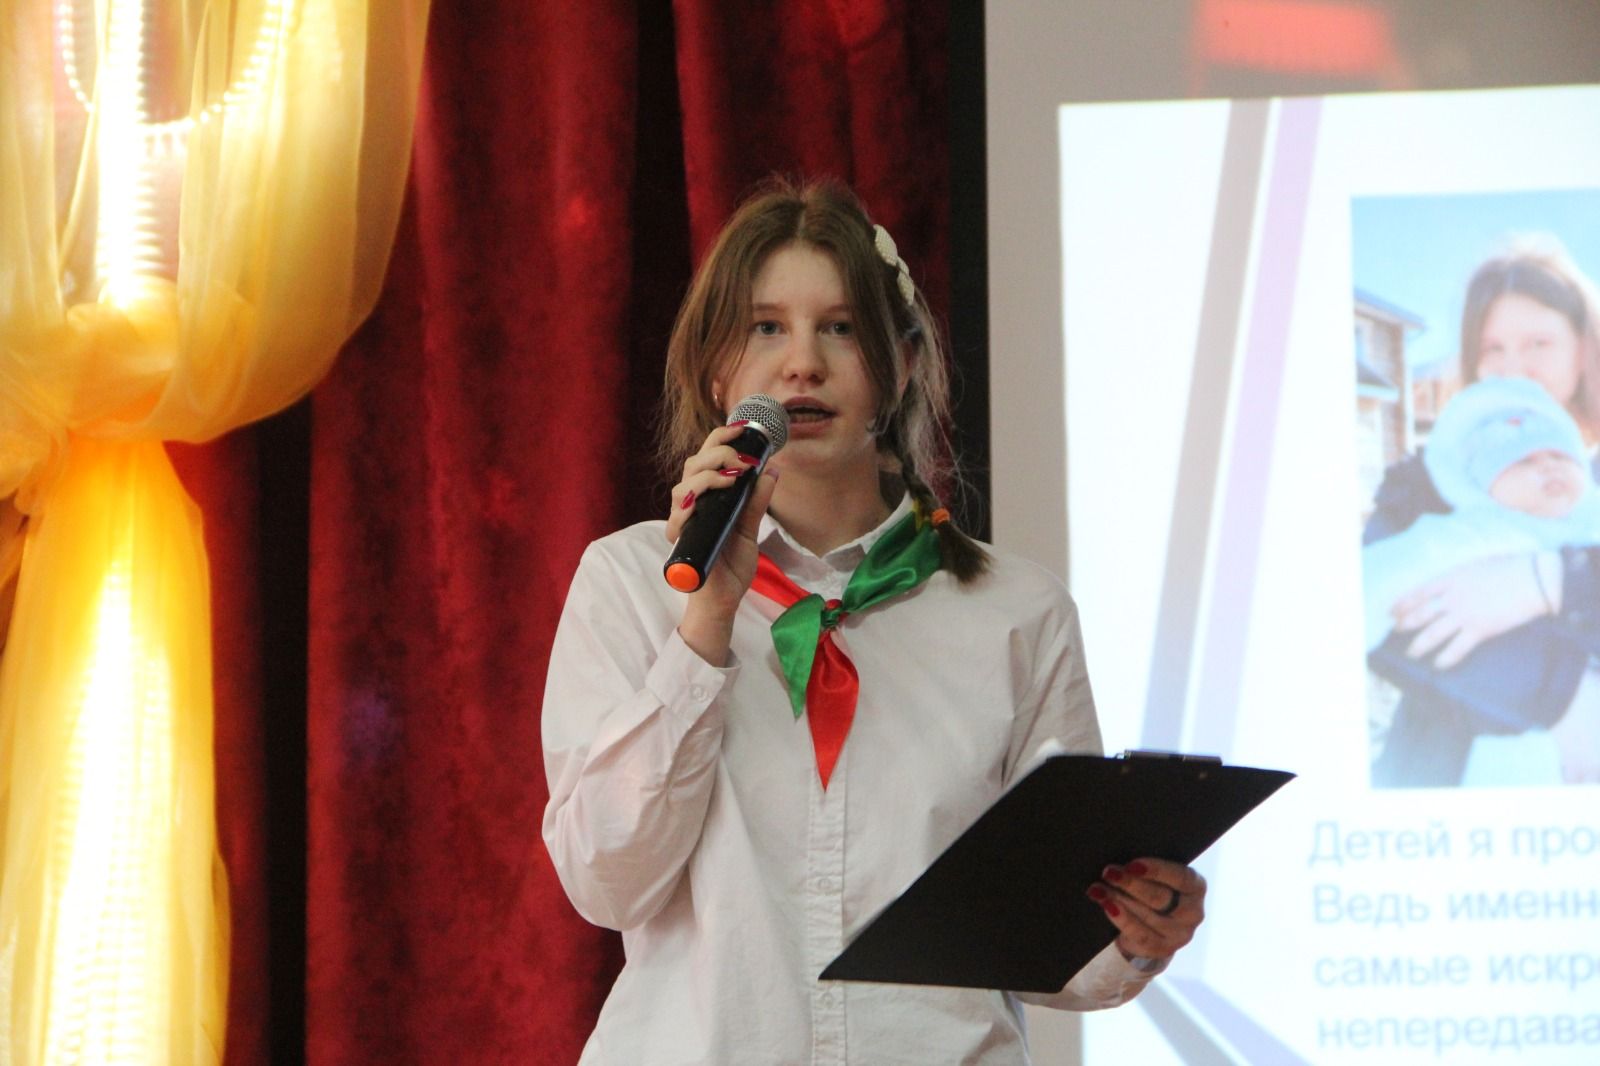 В Спасском районе прошёл муниципальный этап конкурса «Замечательный вожатый»